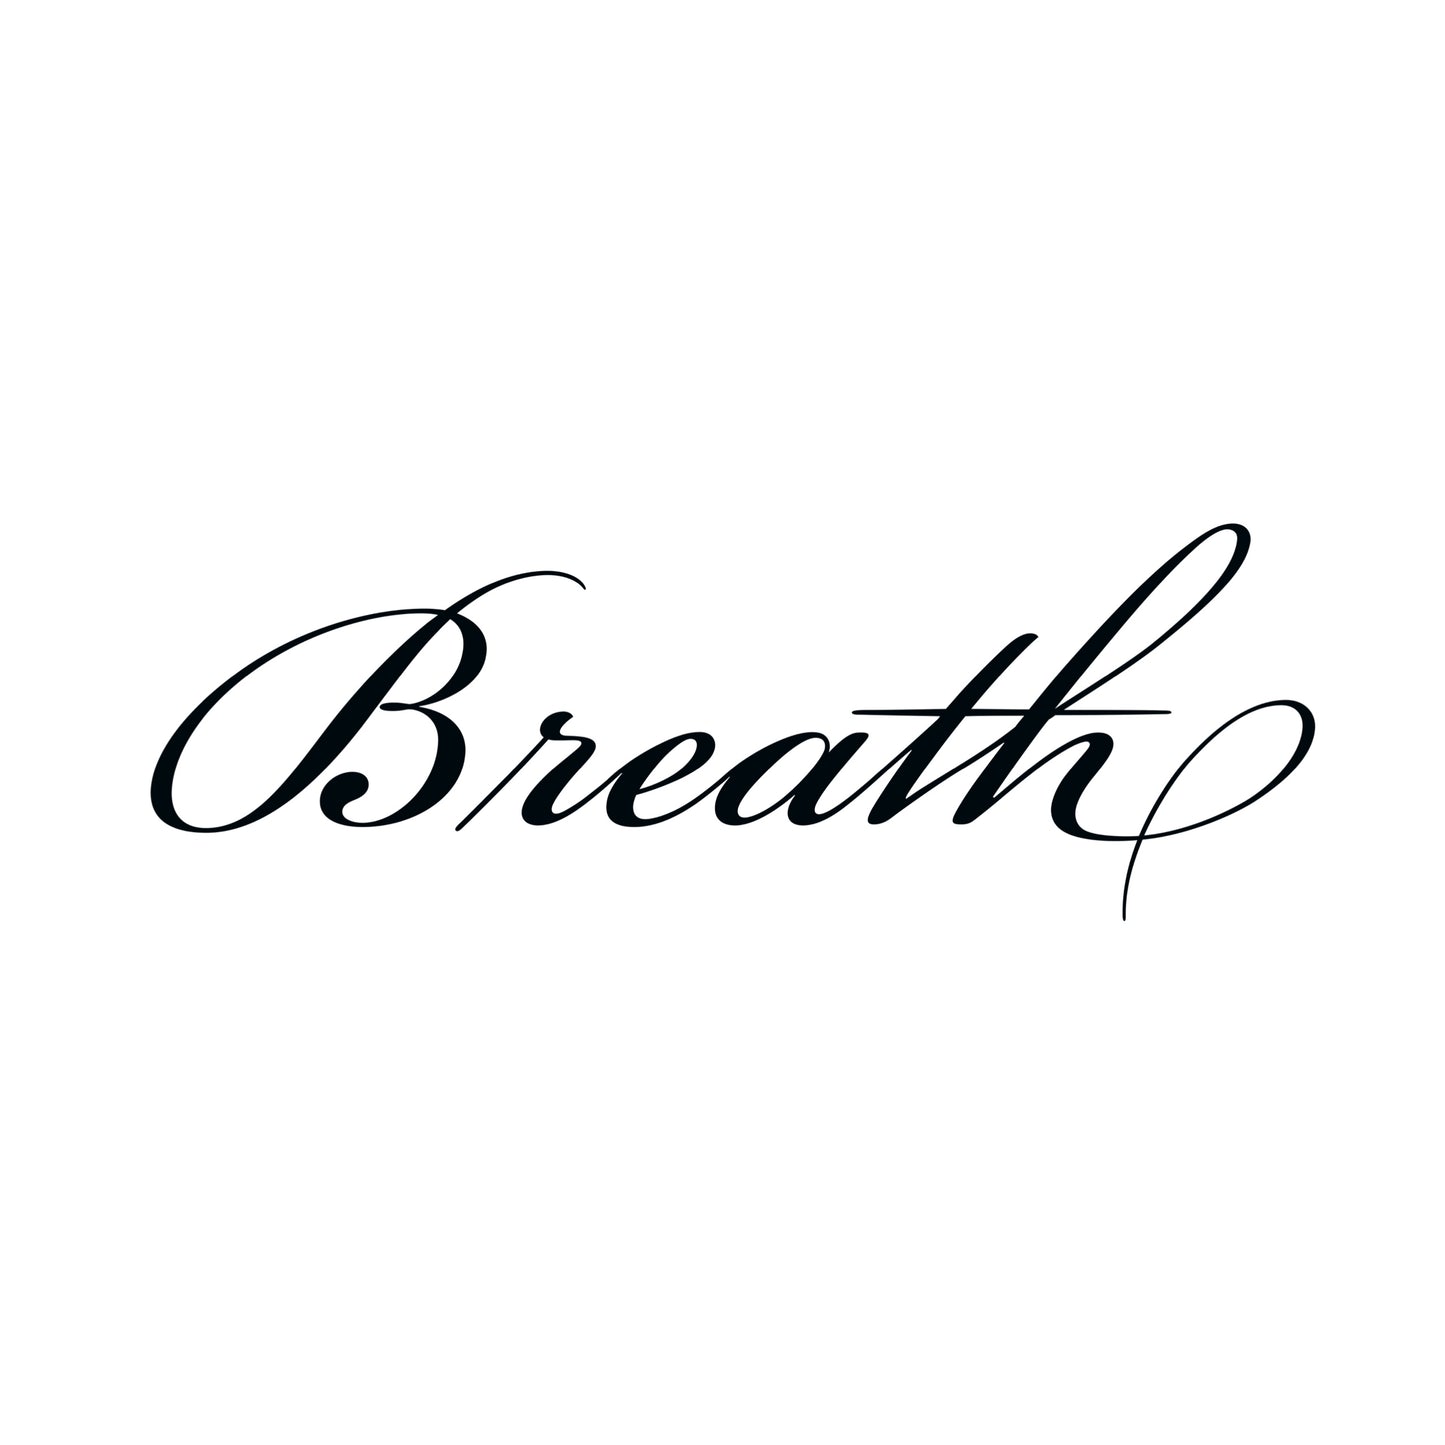 Breath Work